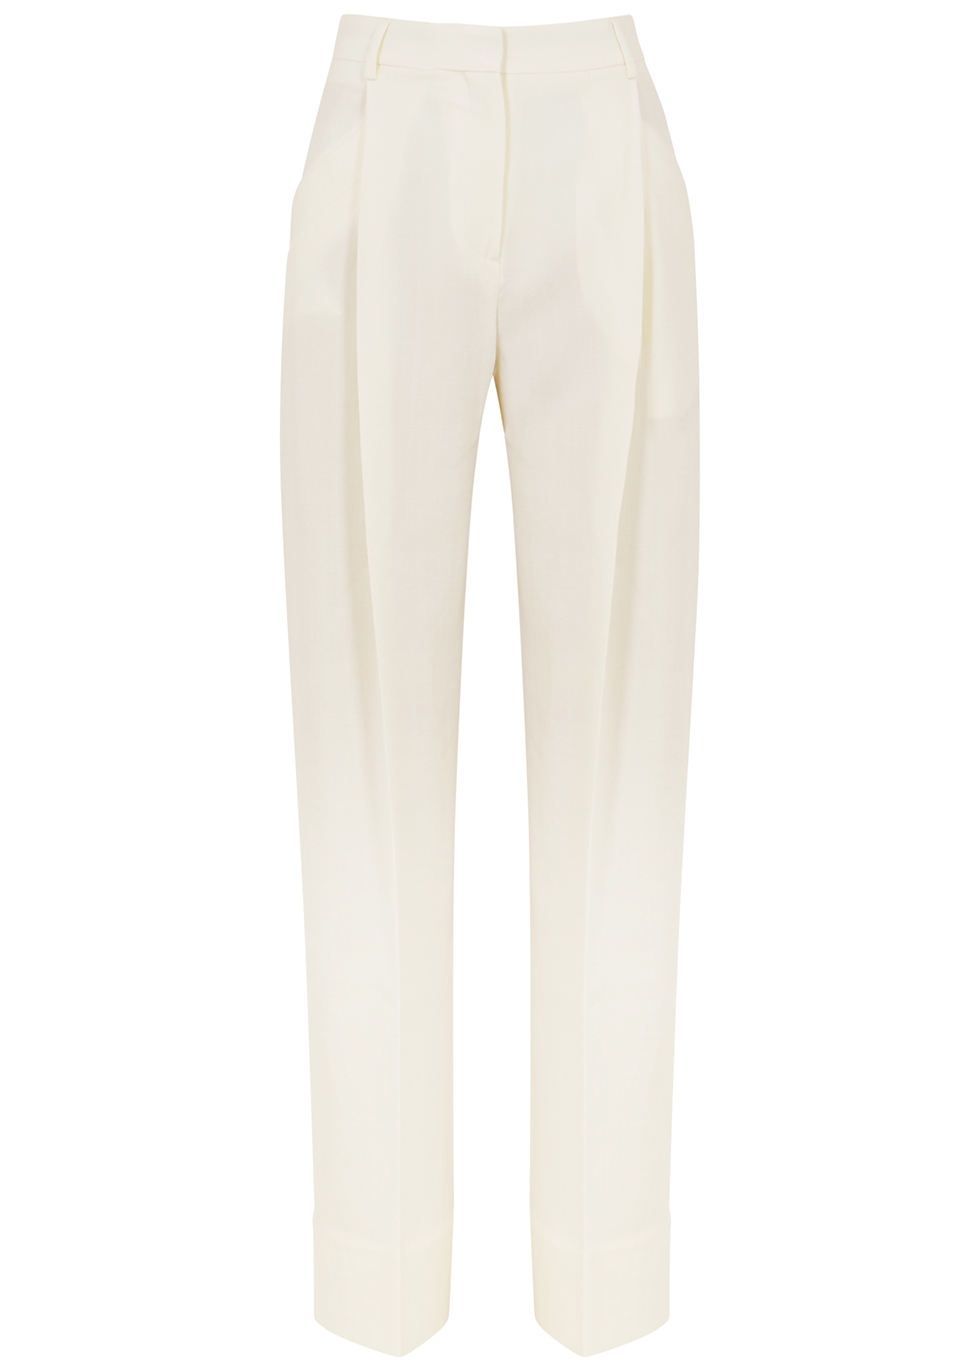 Le Pantalon Loya white wide-leg trousers